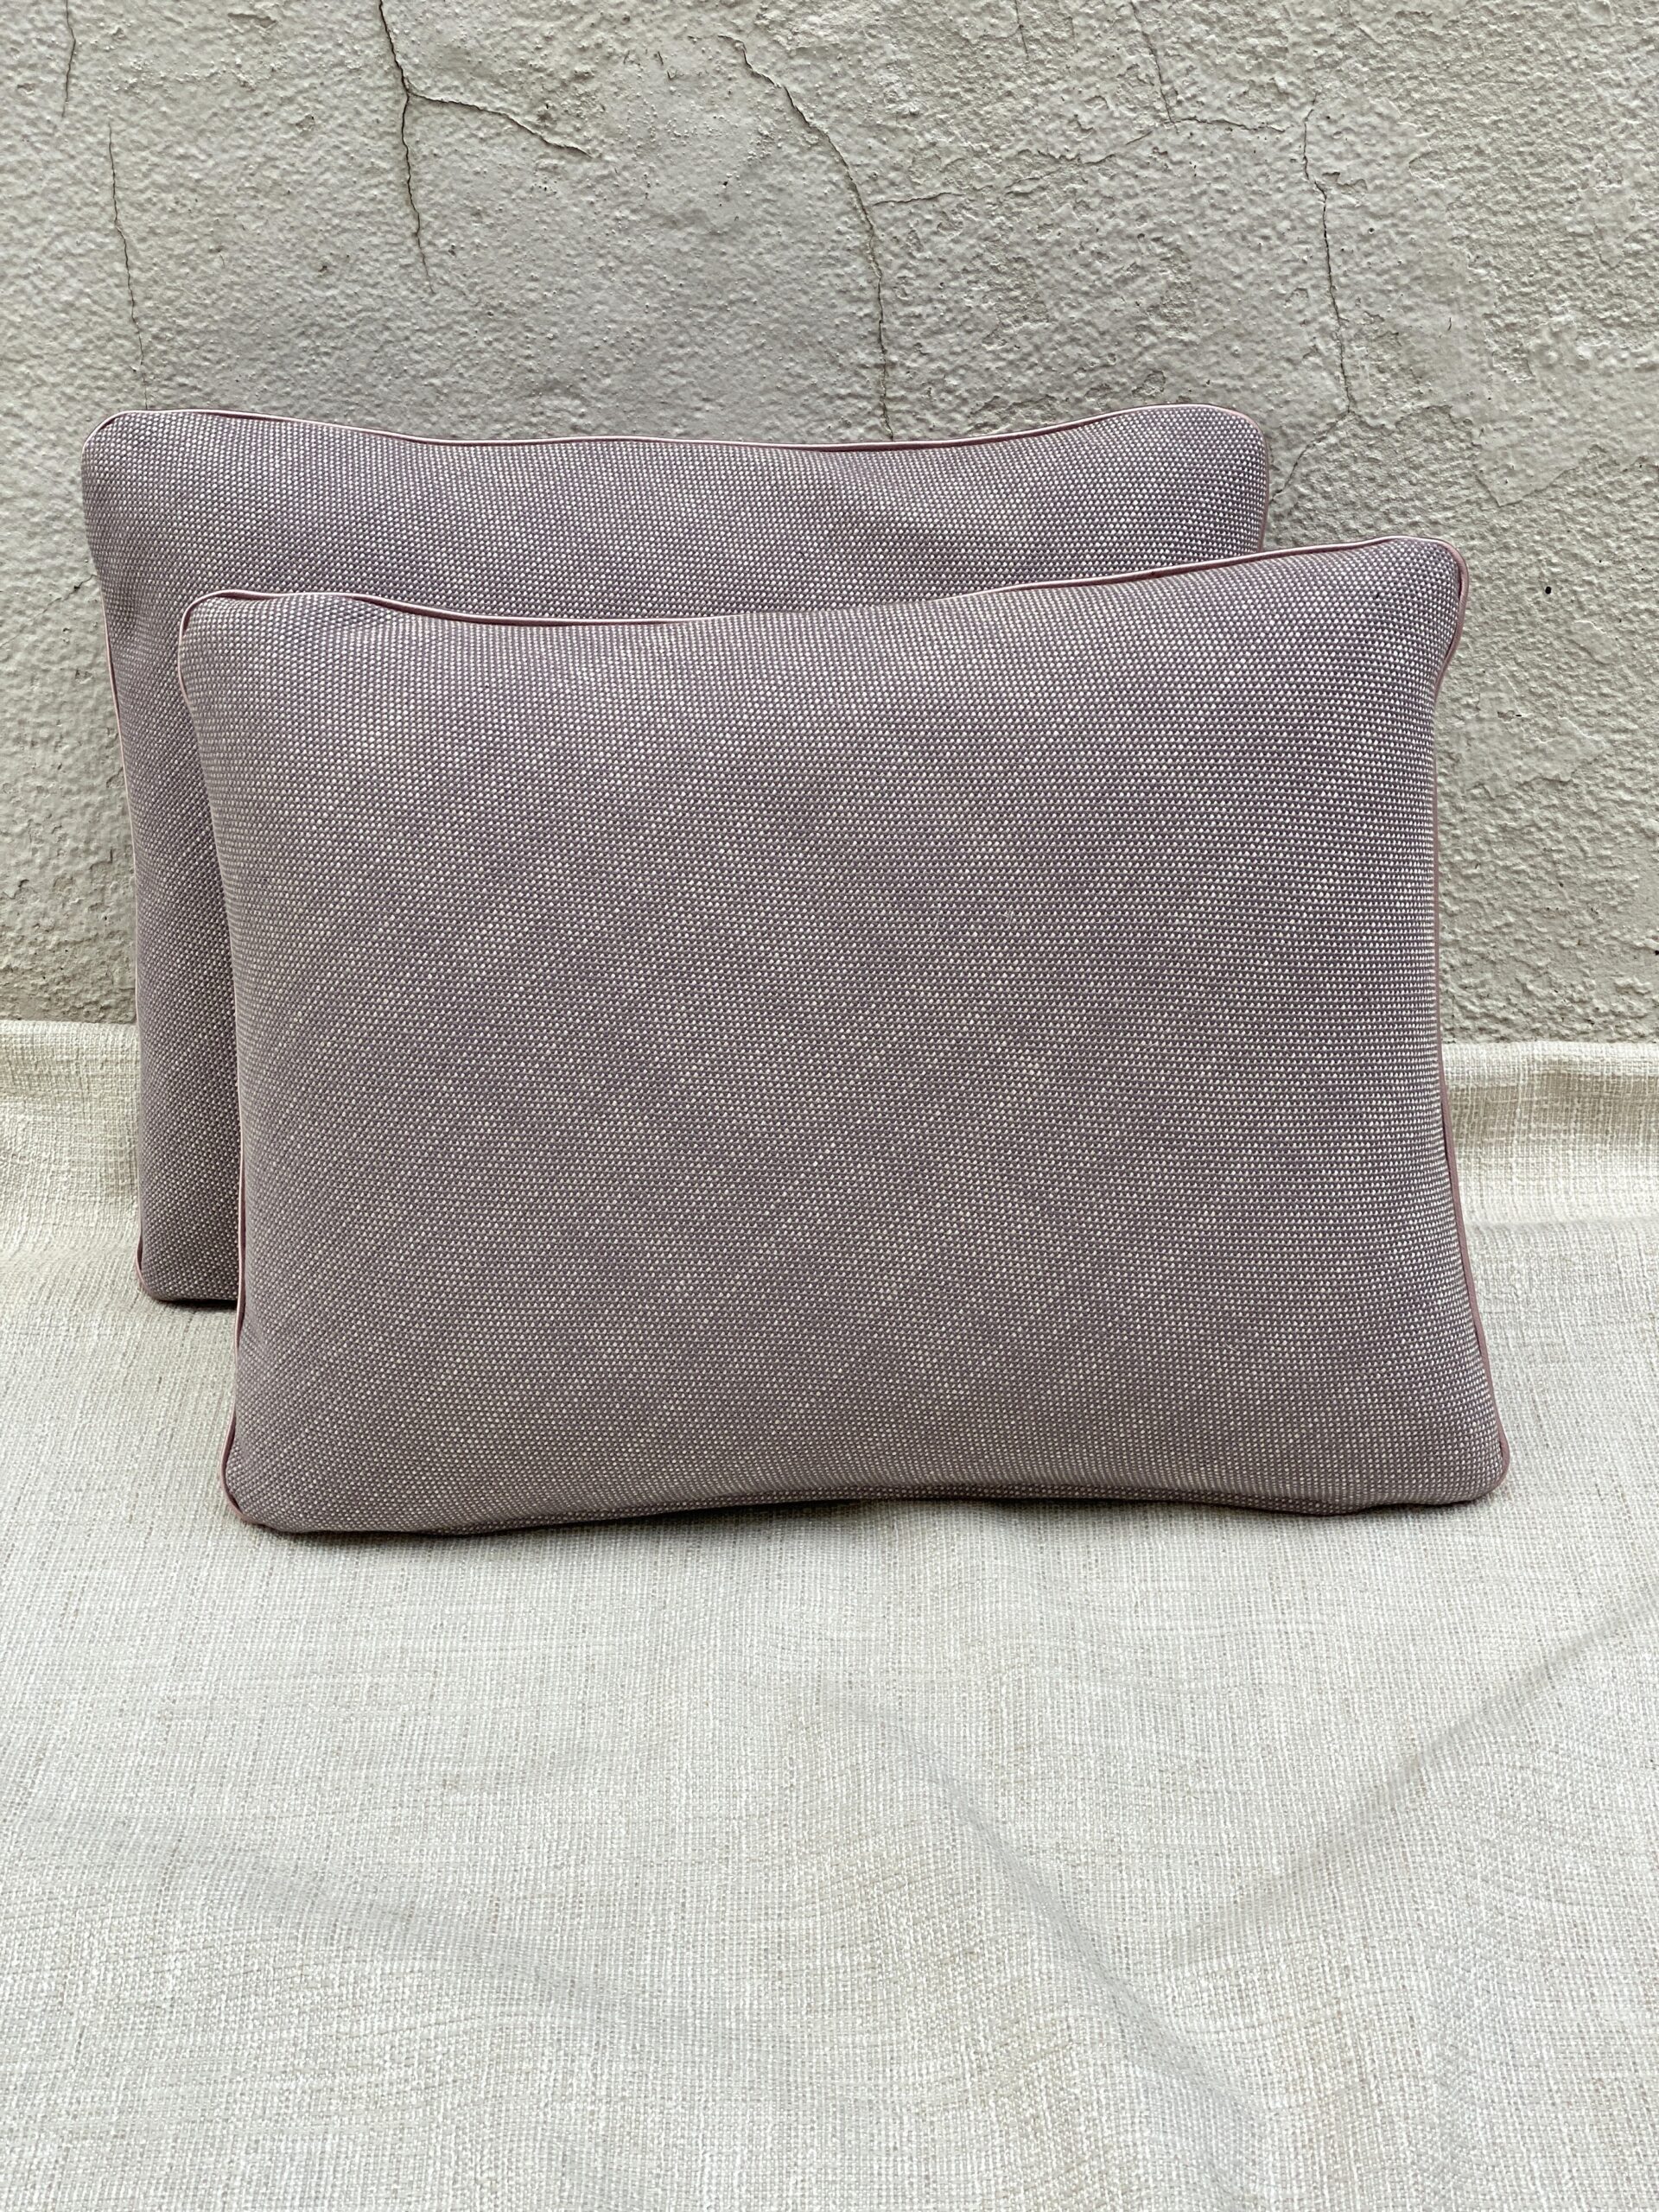 Crosby Stock Linen Lilac Pillows